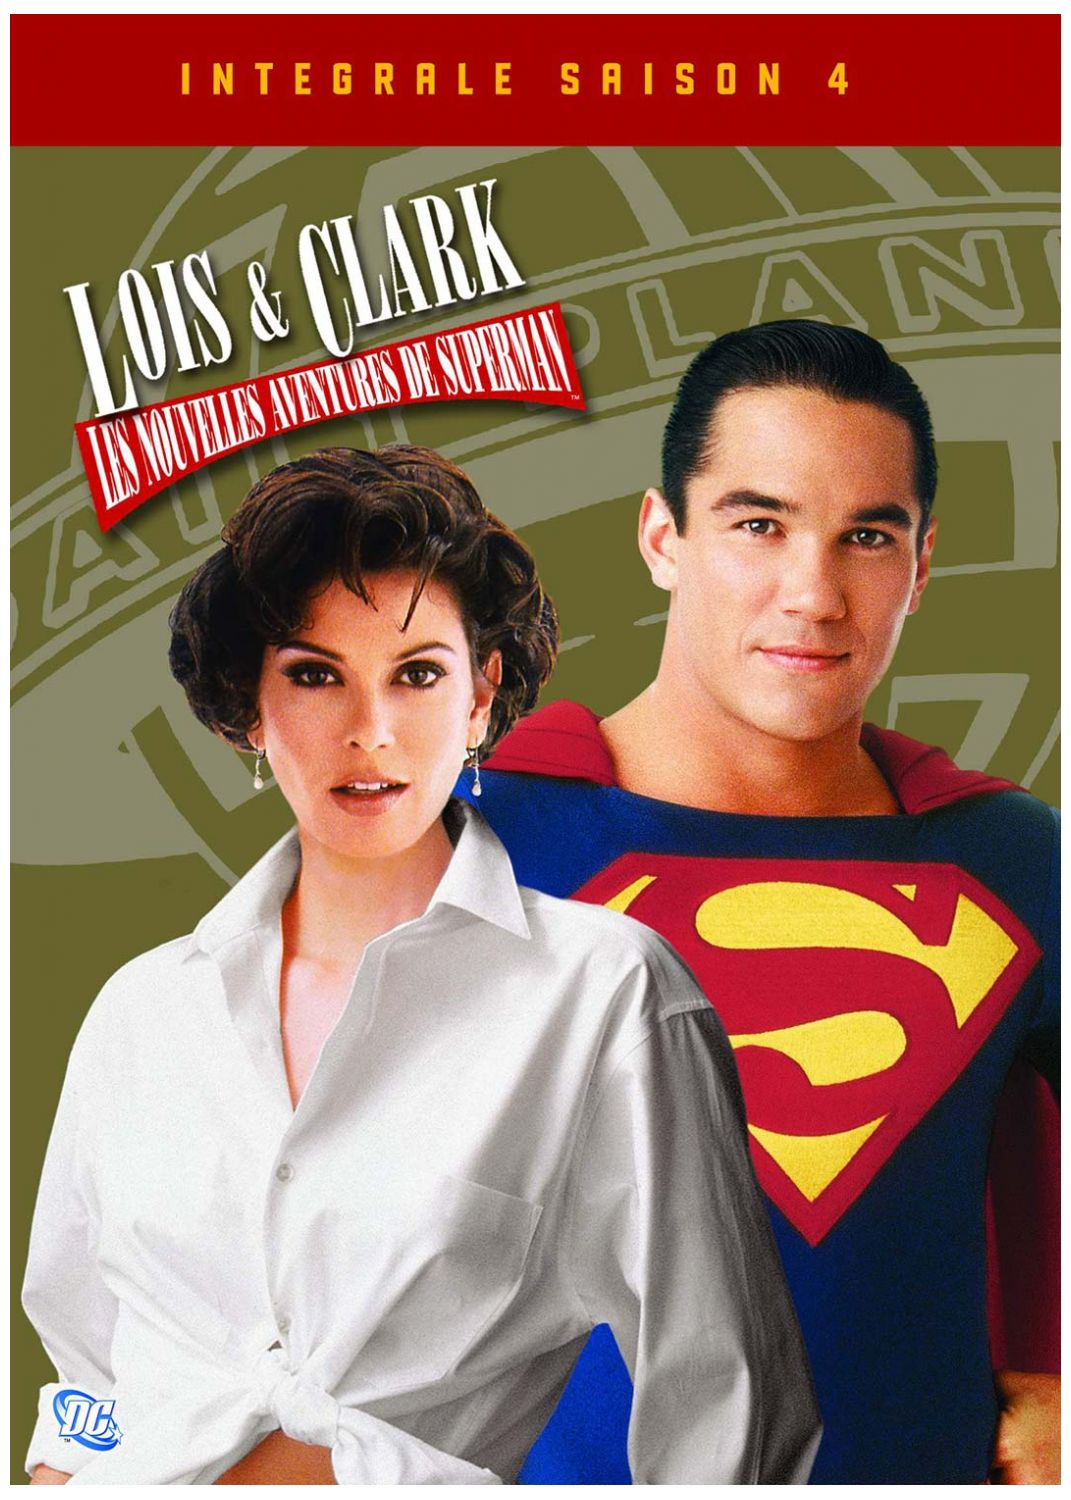 Loïs & Clark, les nouvelles aventures de Superman - Saison 4 [DVD à la location]